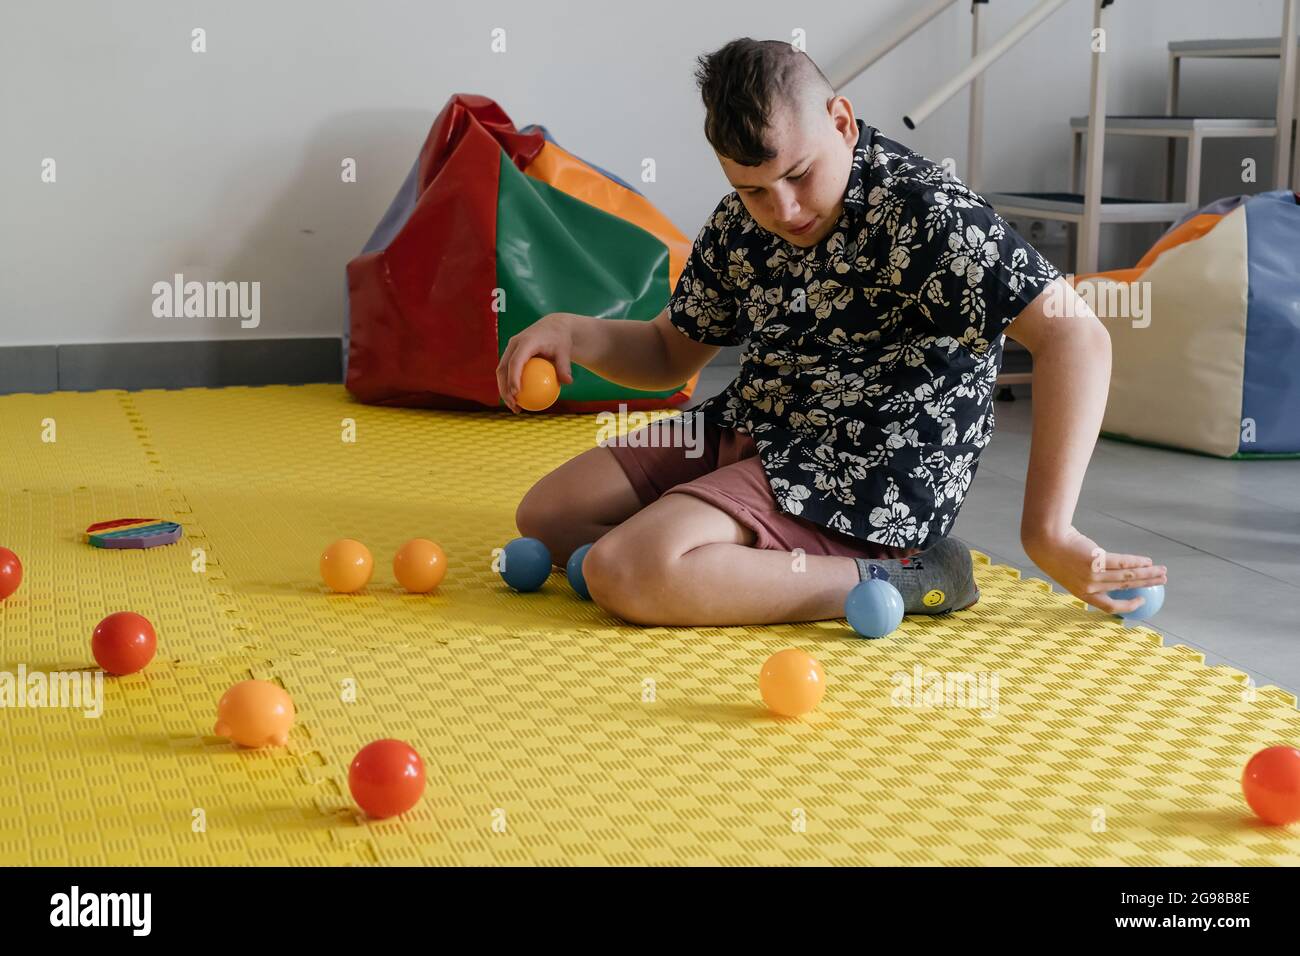 Kinder mit Behinderung bekommen sensorische Aktivität mit Spielzeug, Kugeln, kleine Objekte, zerebrale Lähmung Junge spielen beruhigende Spiel, Ausbildung feinmotorischen Fähigkeiten Stockfoto